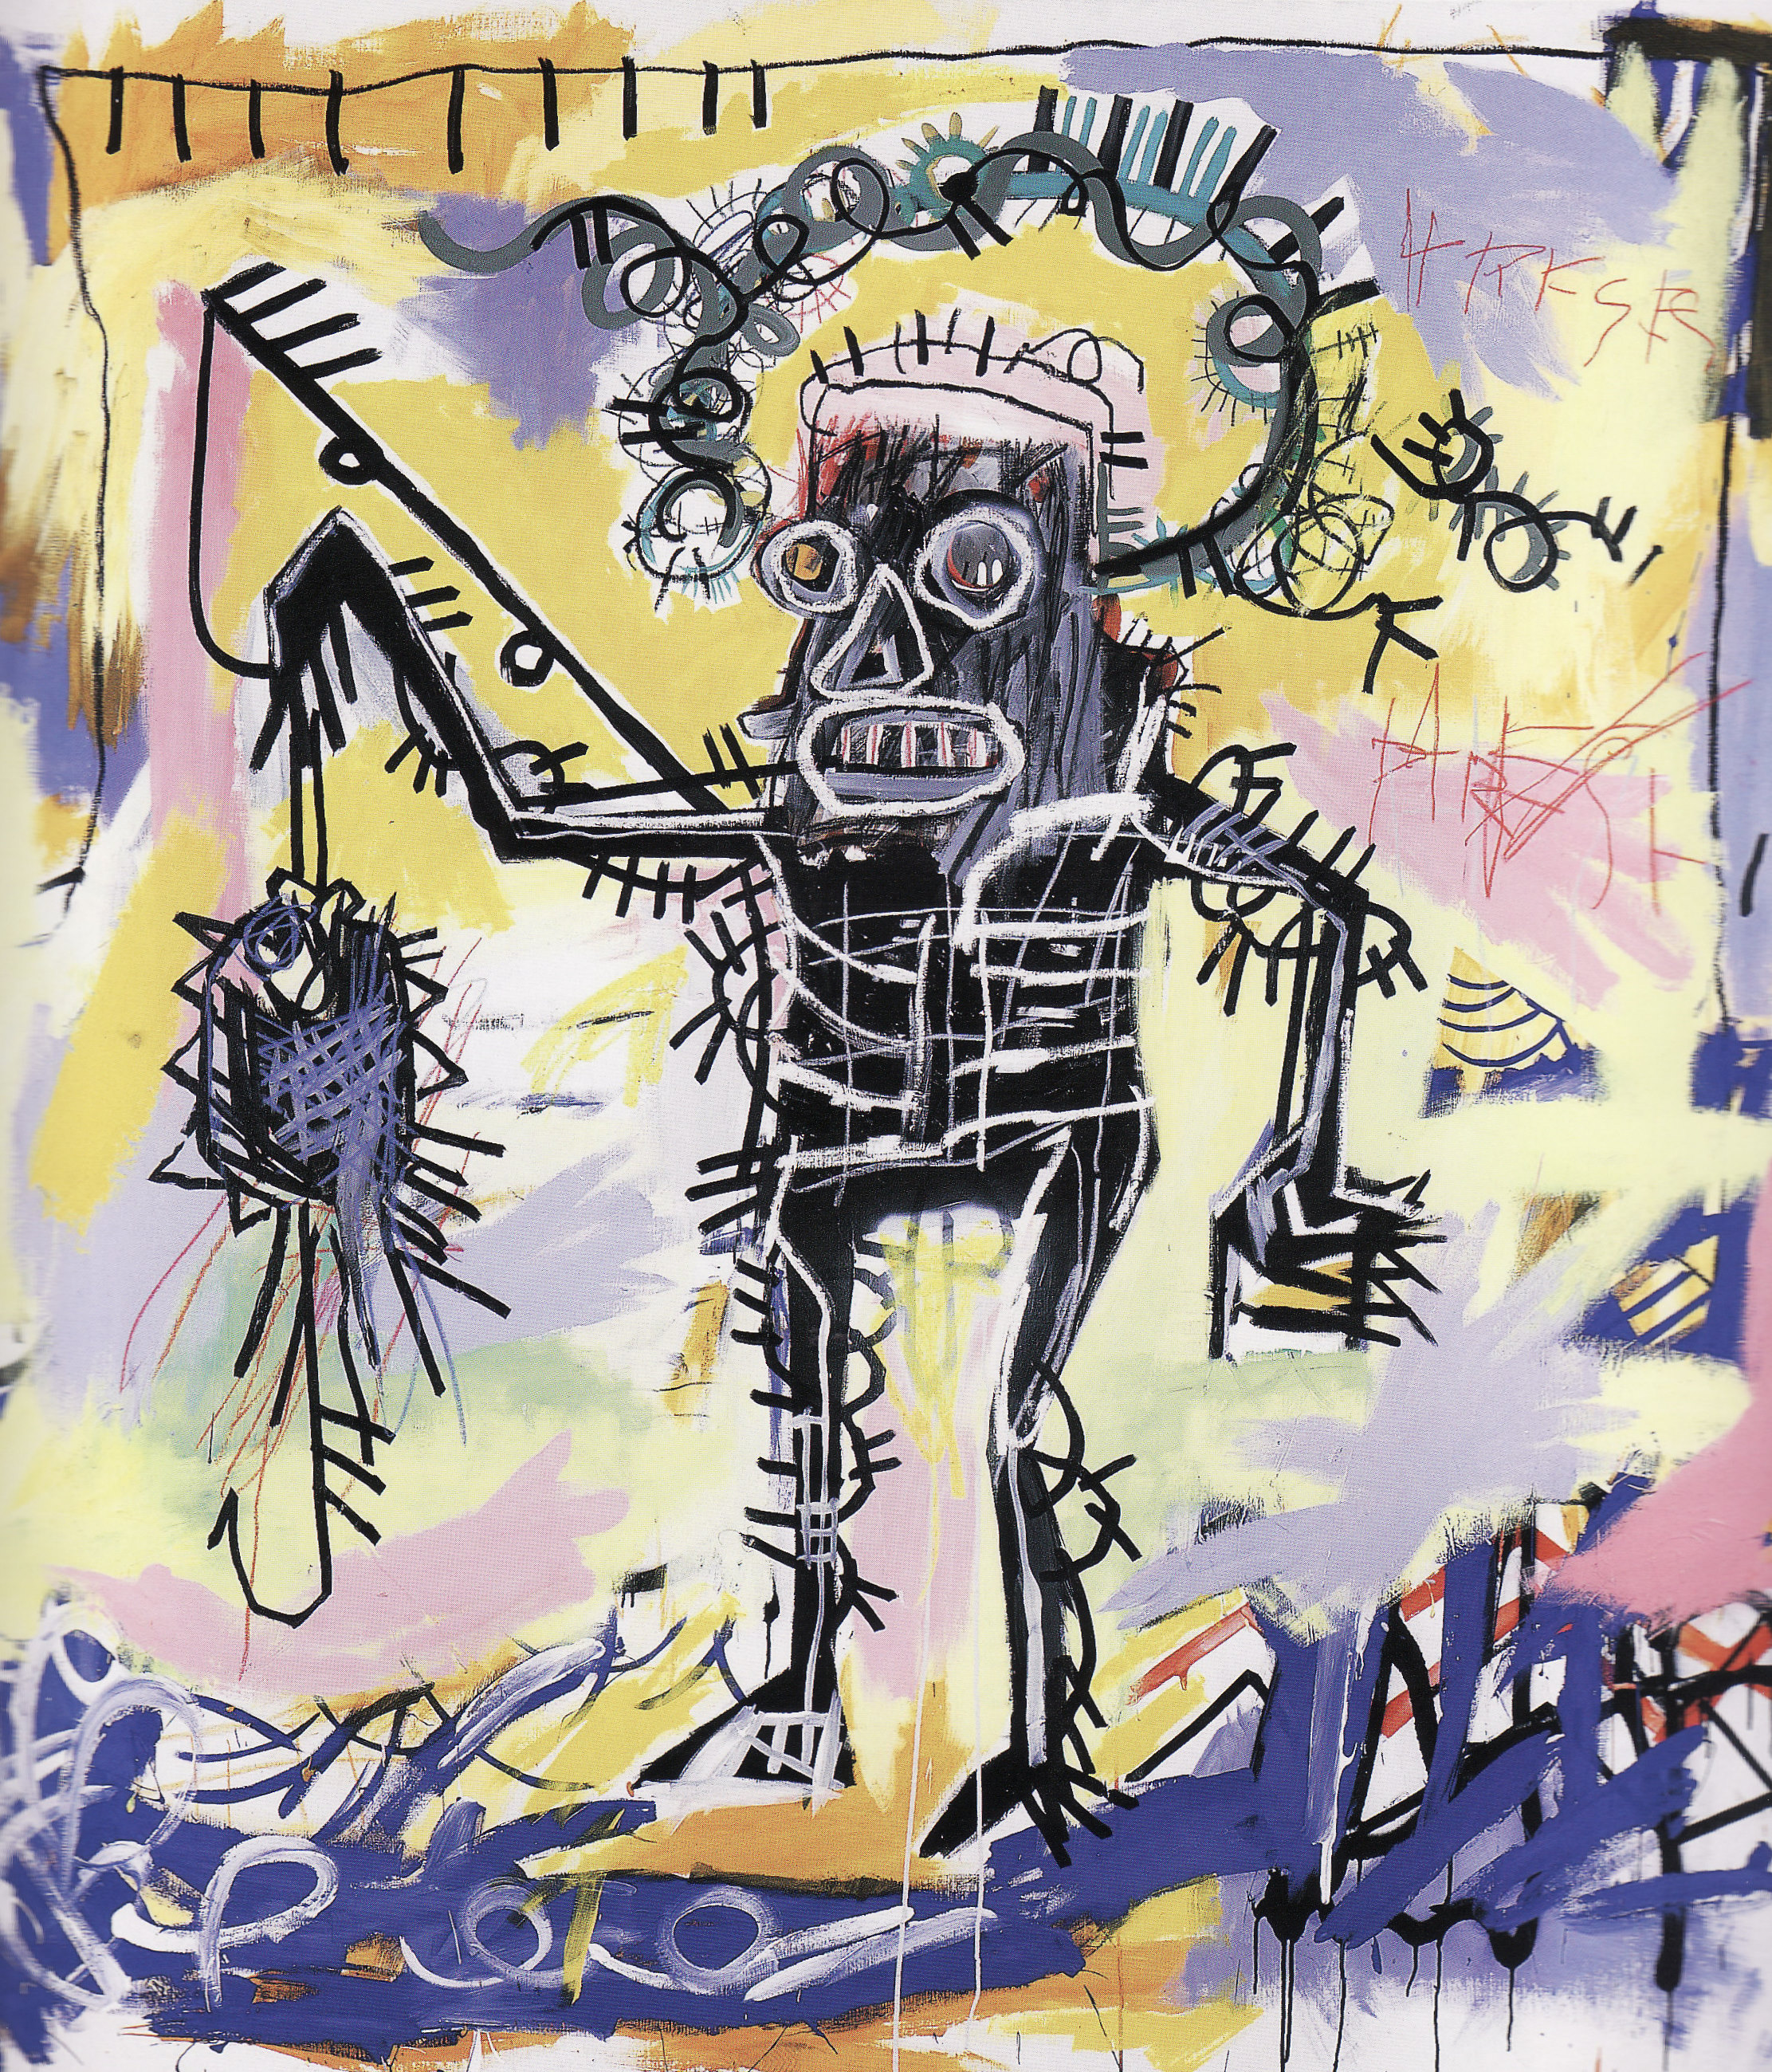 Без названия, 1981. Жан-Мишель Баския (Jean-Michel Basquiat) - американский художник. Неоэкспрессионизм